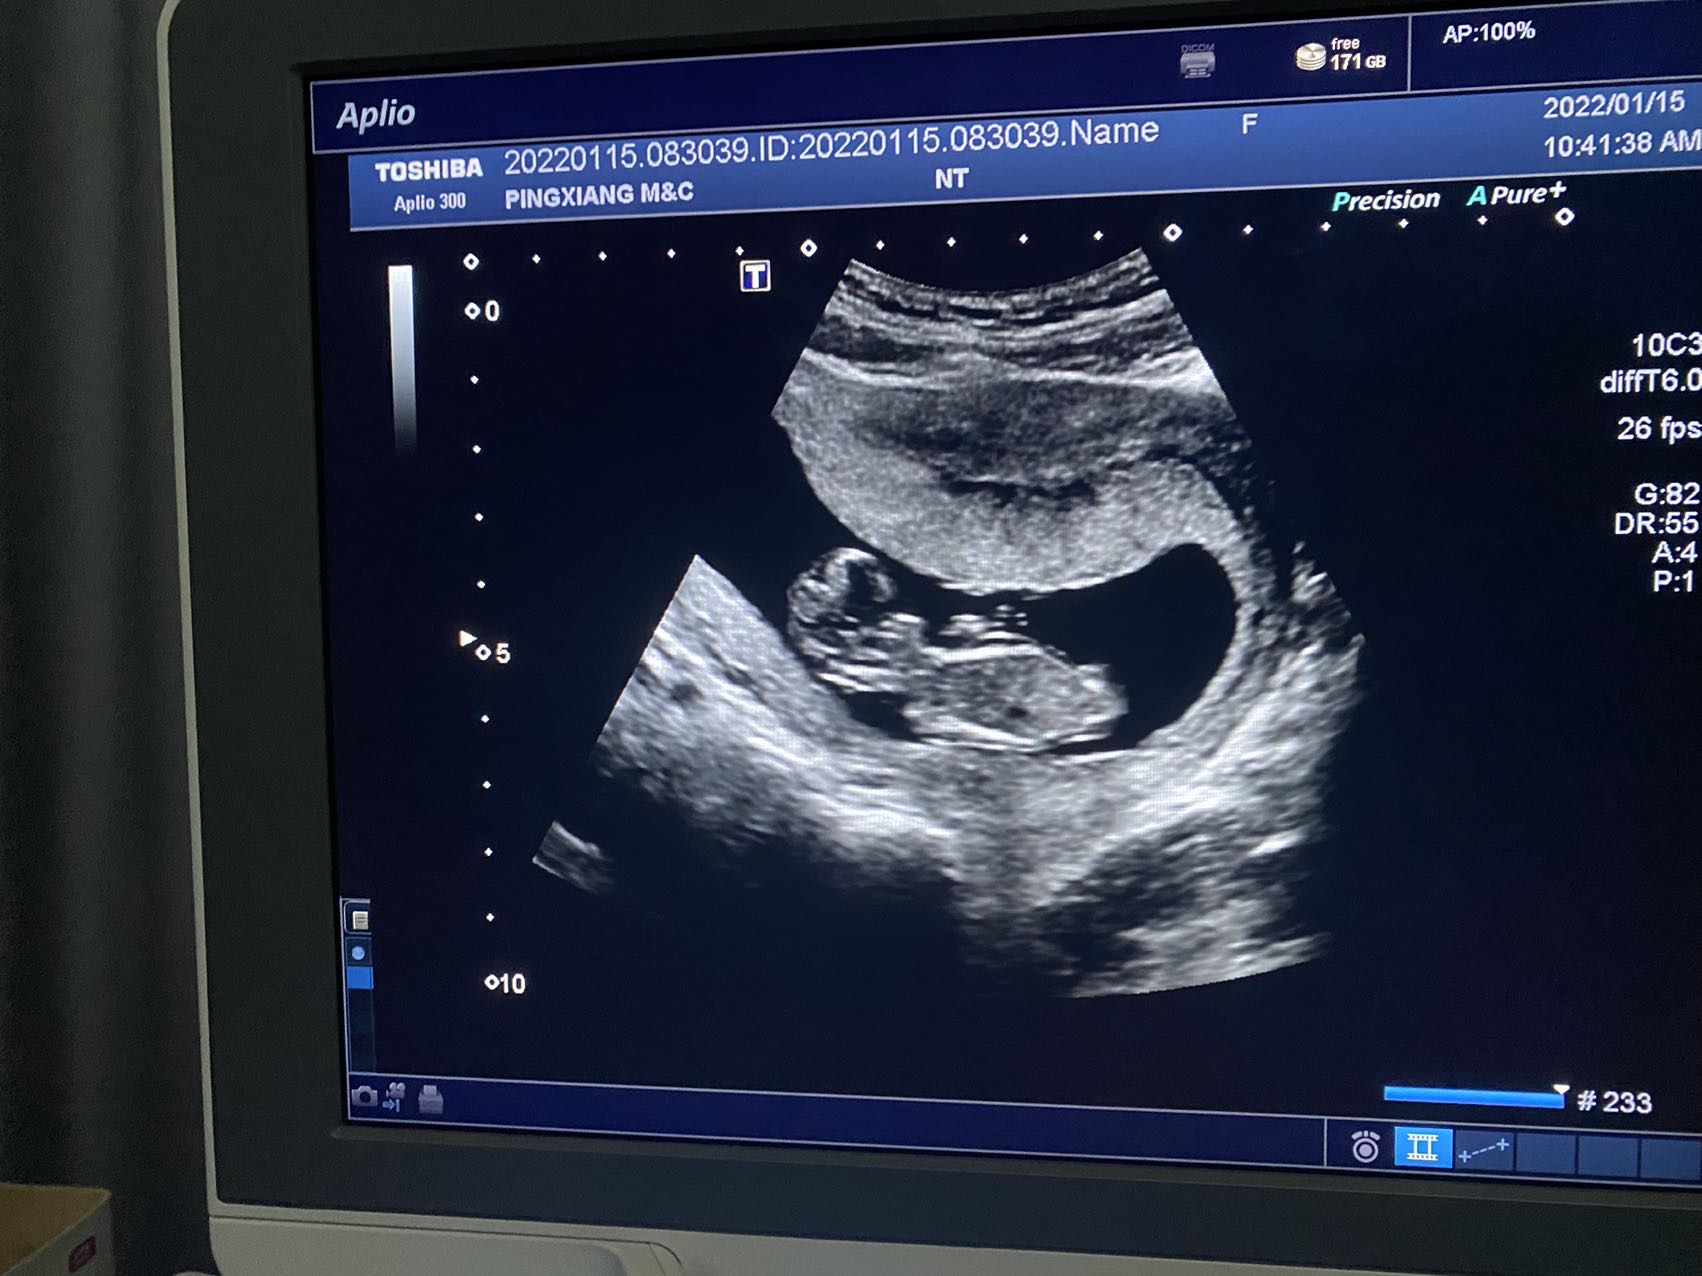 宝宝十一周胎儿图图片